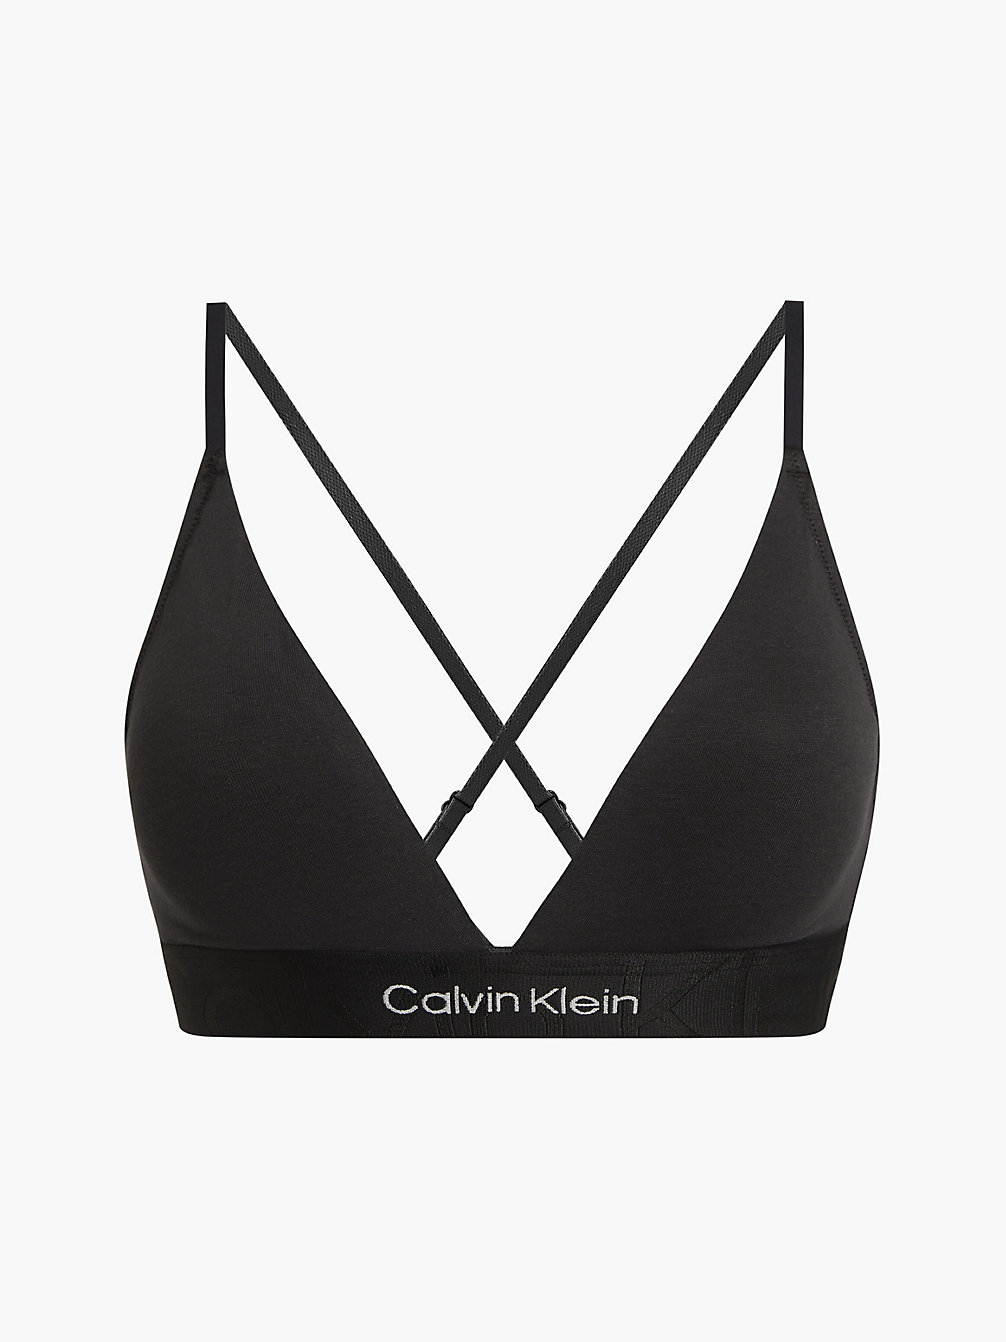 BLACK Bralette – Embossed Icon undefined Damen Calvin Klein